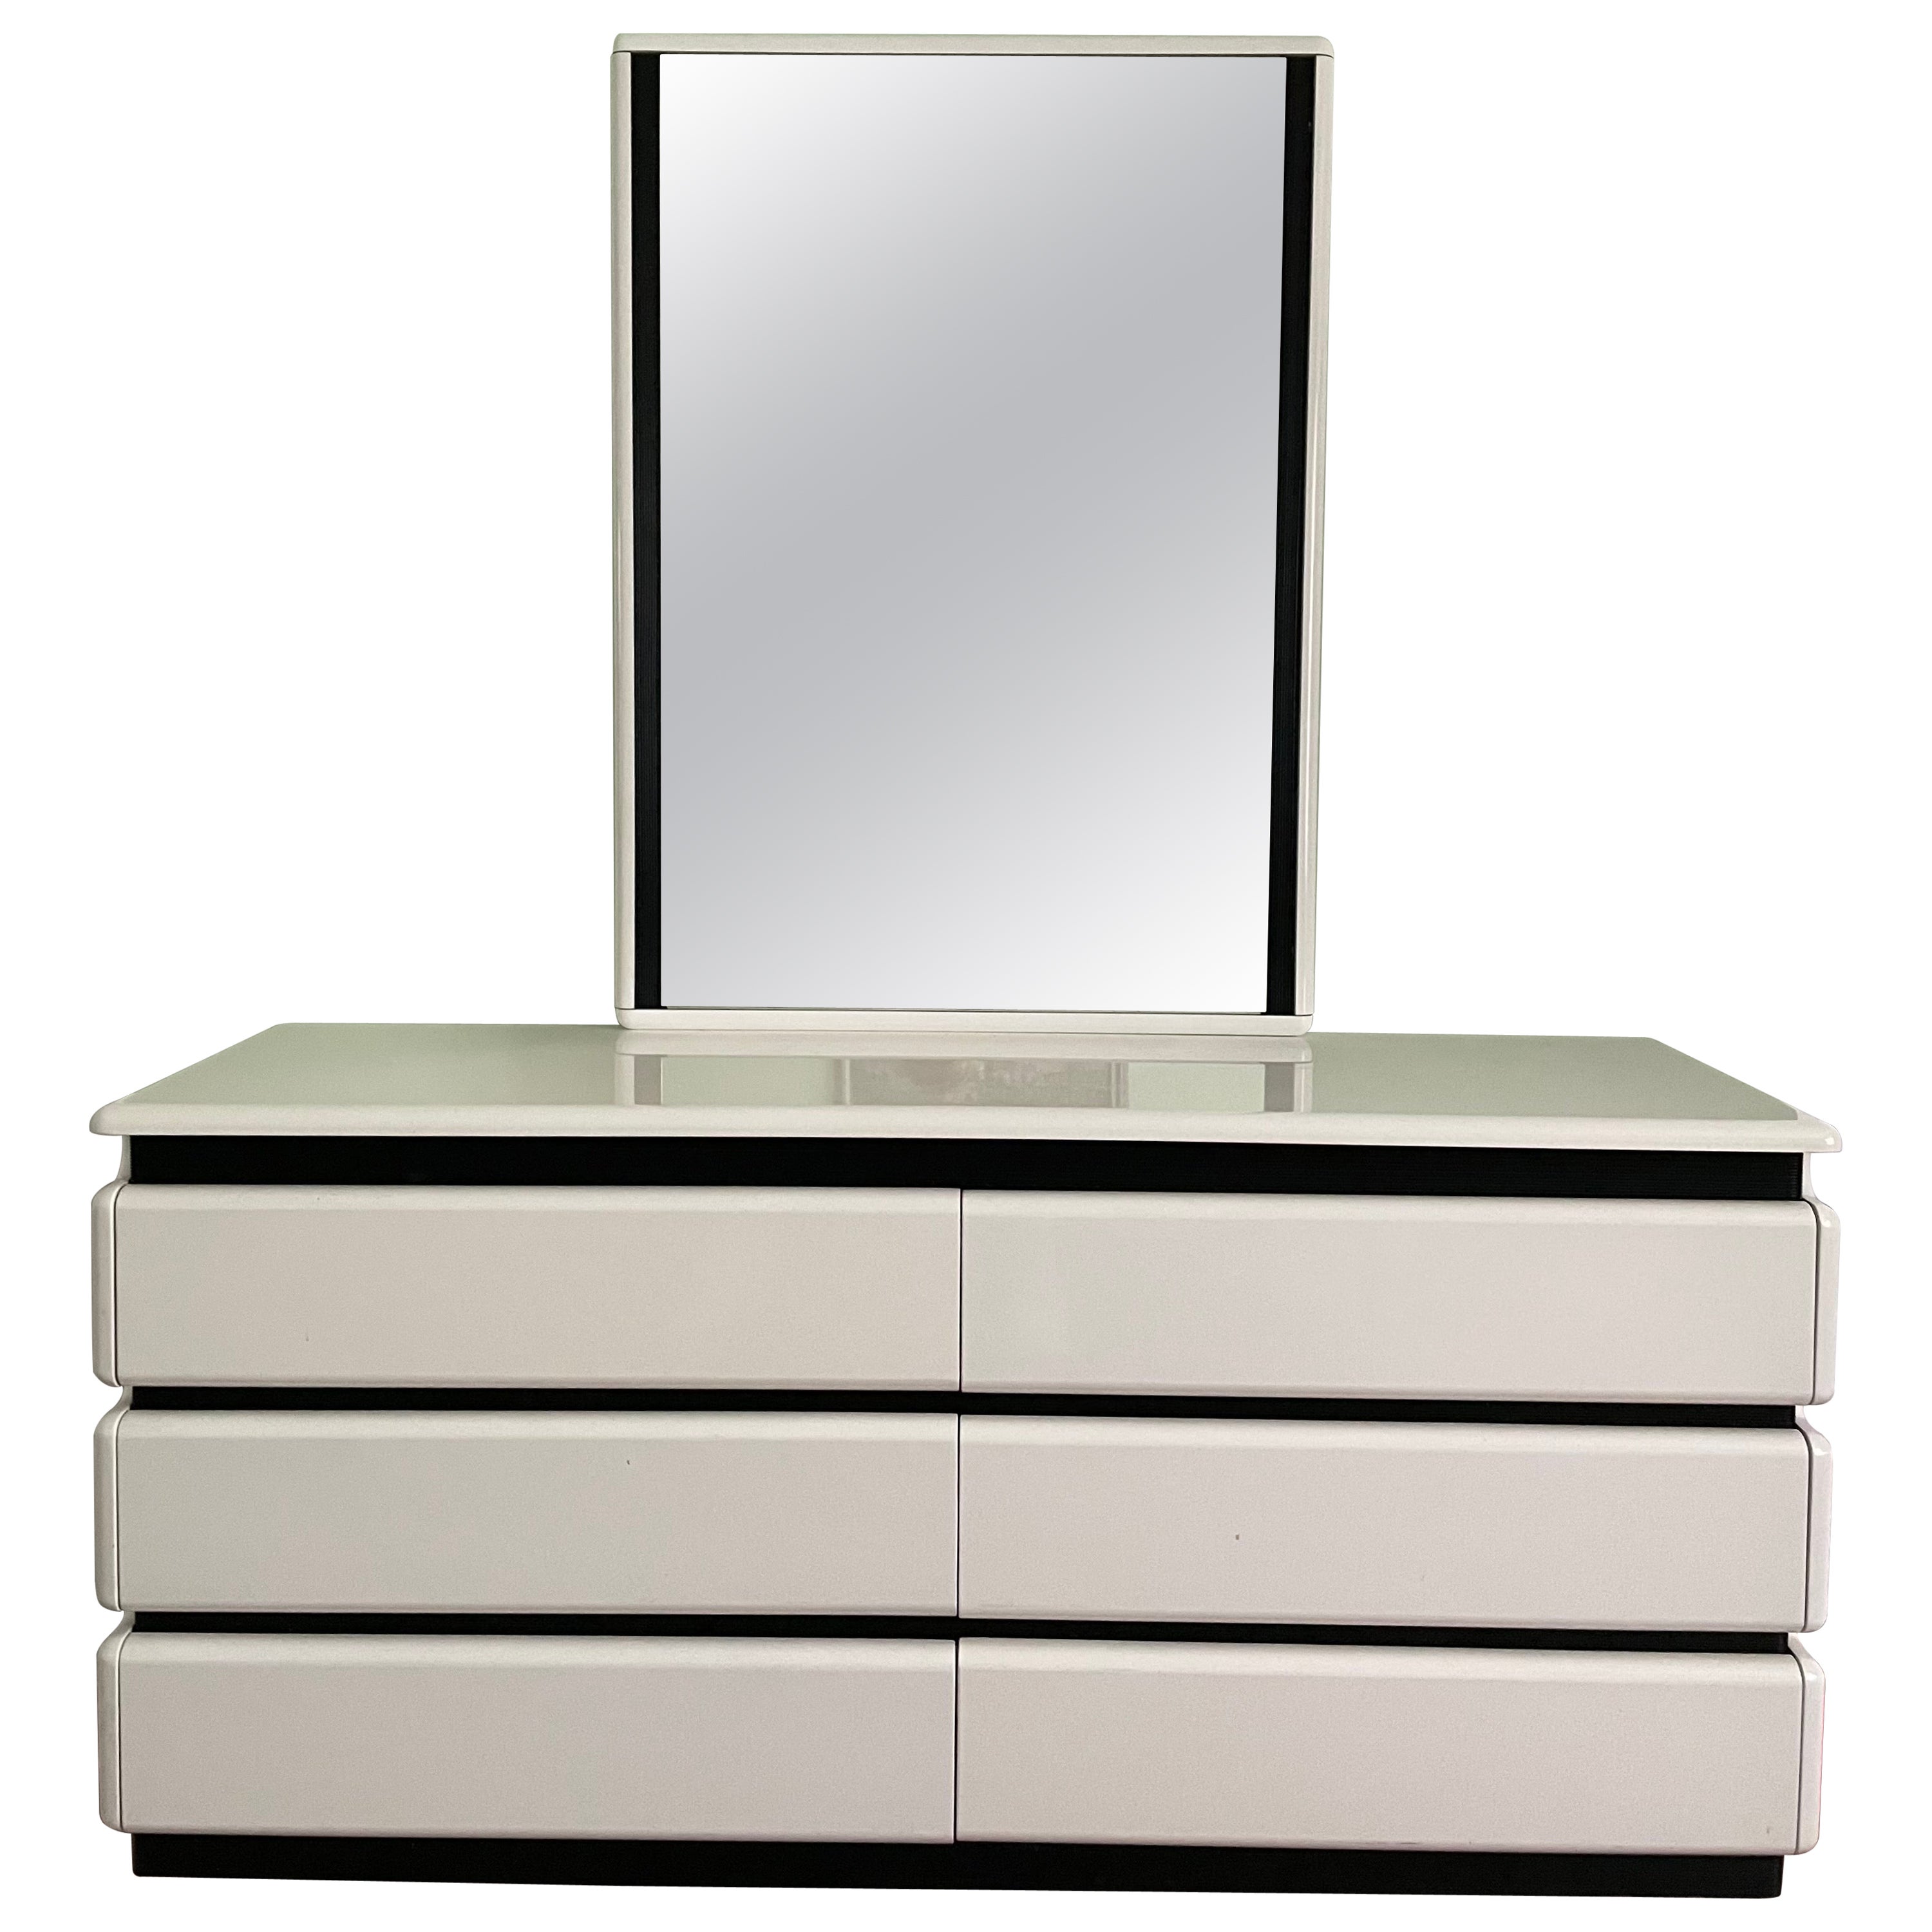 Postmoderne Rougier-Kommode mit sechs Schubladen, hochglänzend weiß, lackiert, modern, mit Mir